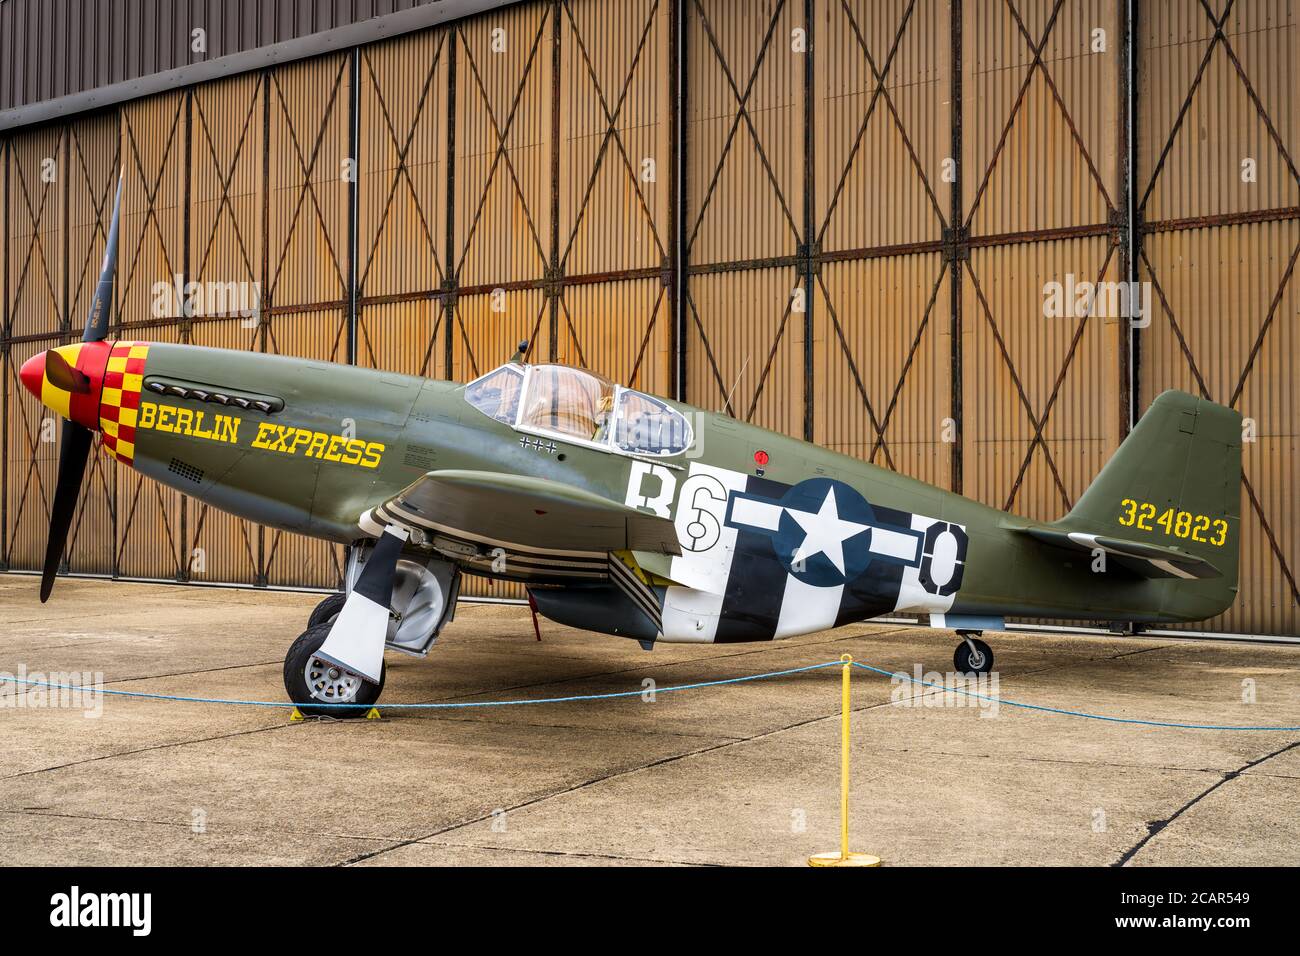 P-51B Mustang dans le schéma de peinture "Berlin Express" (N-515ZB) au Musée impérial de la guerre IWM Duxford. Fait partie de la collection Fighter. Construit en 1943. Banque D'Images